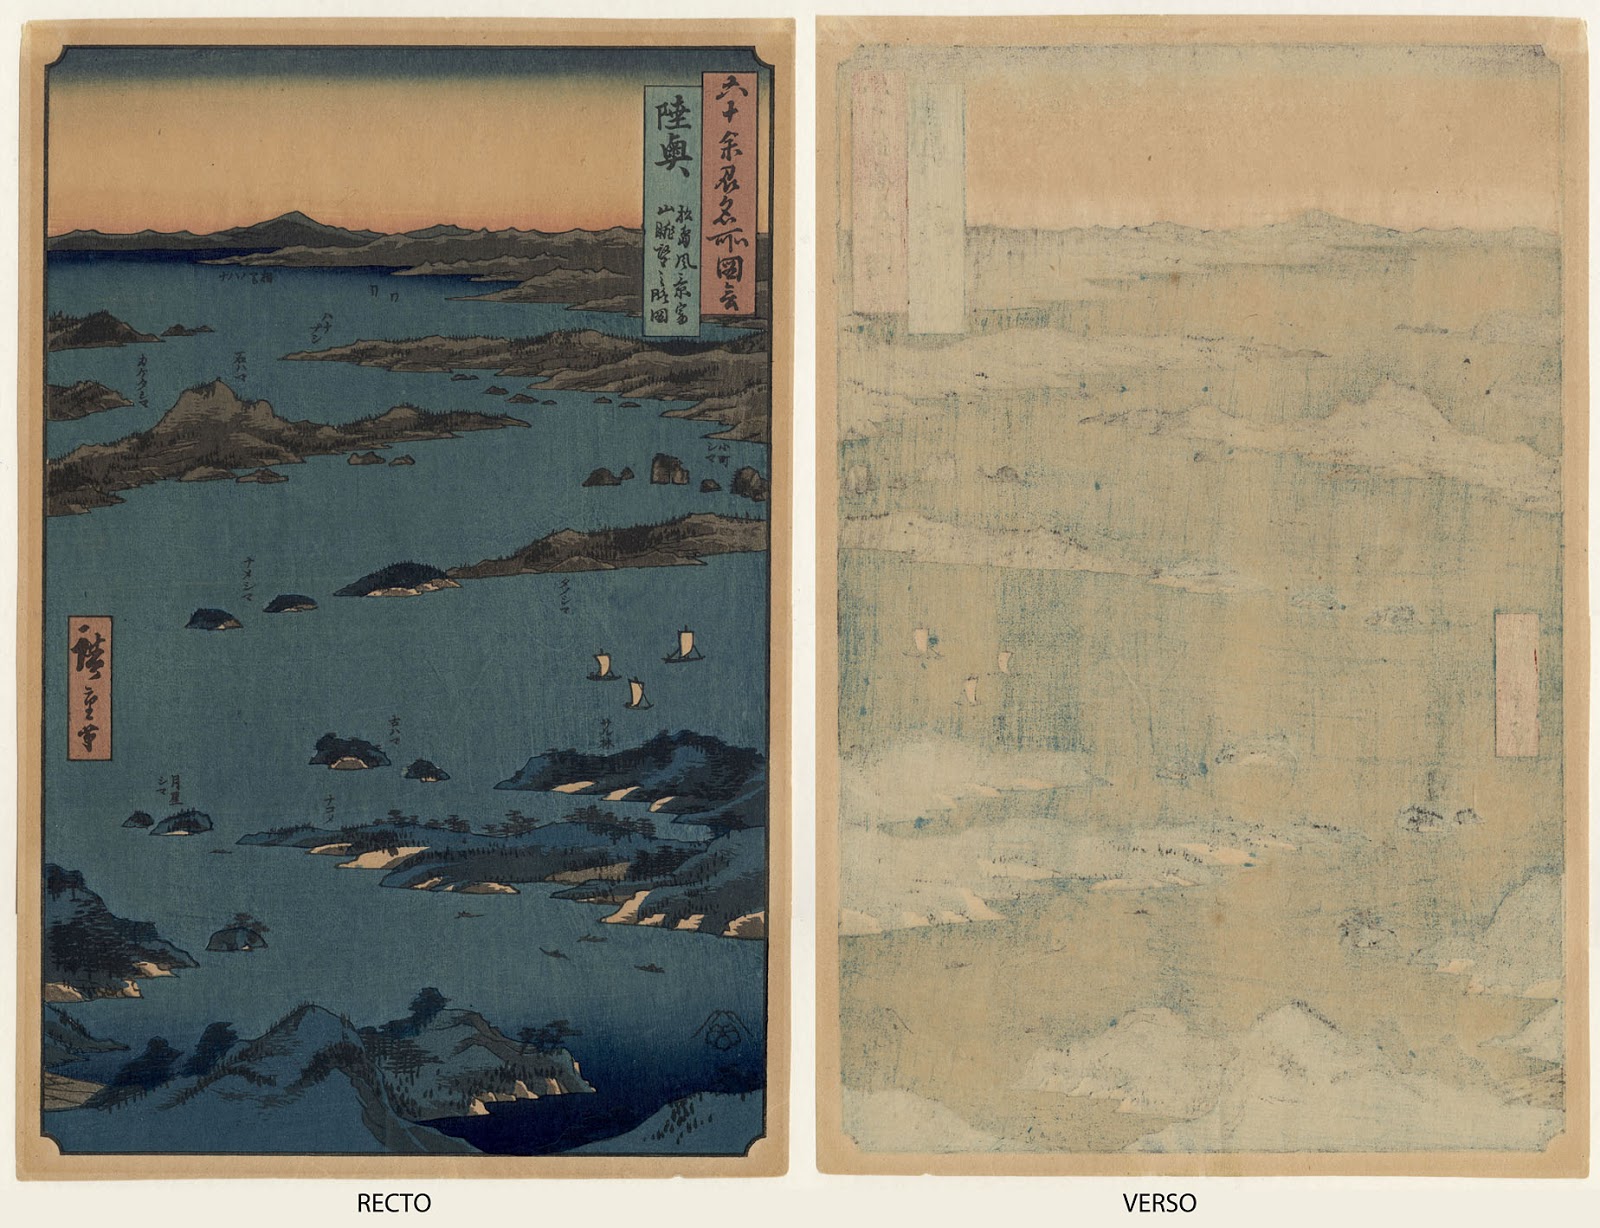 Prints and Principles: After Utagawa Hiroshige's woodblock print 